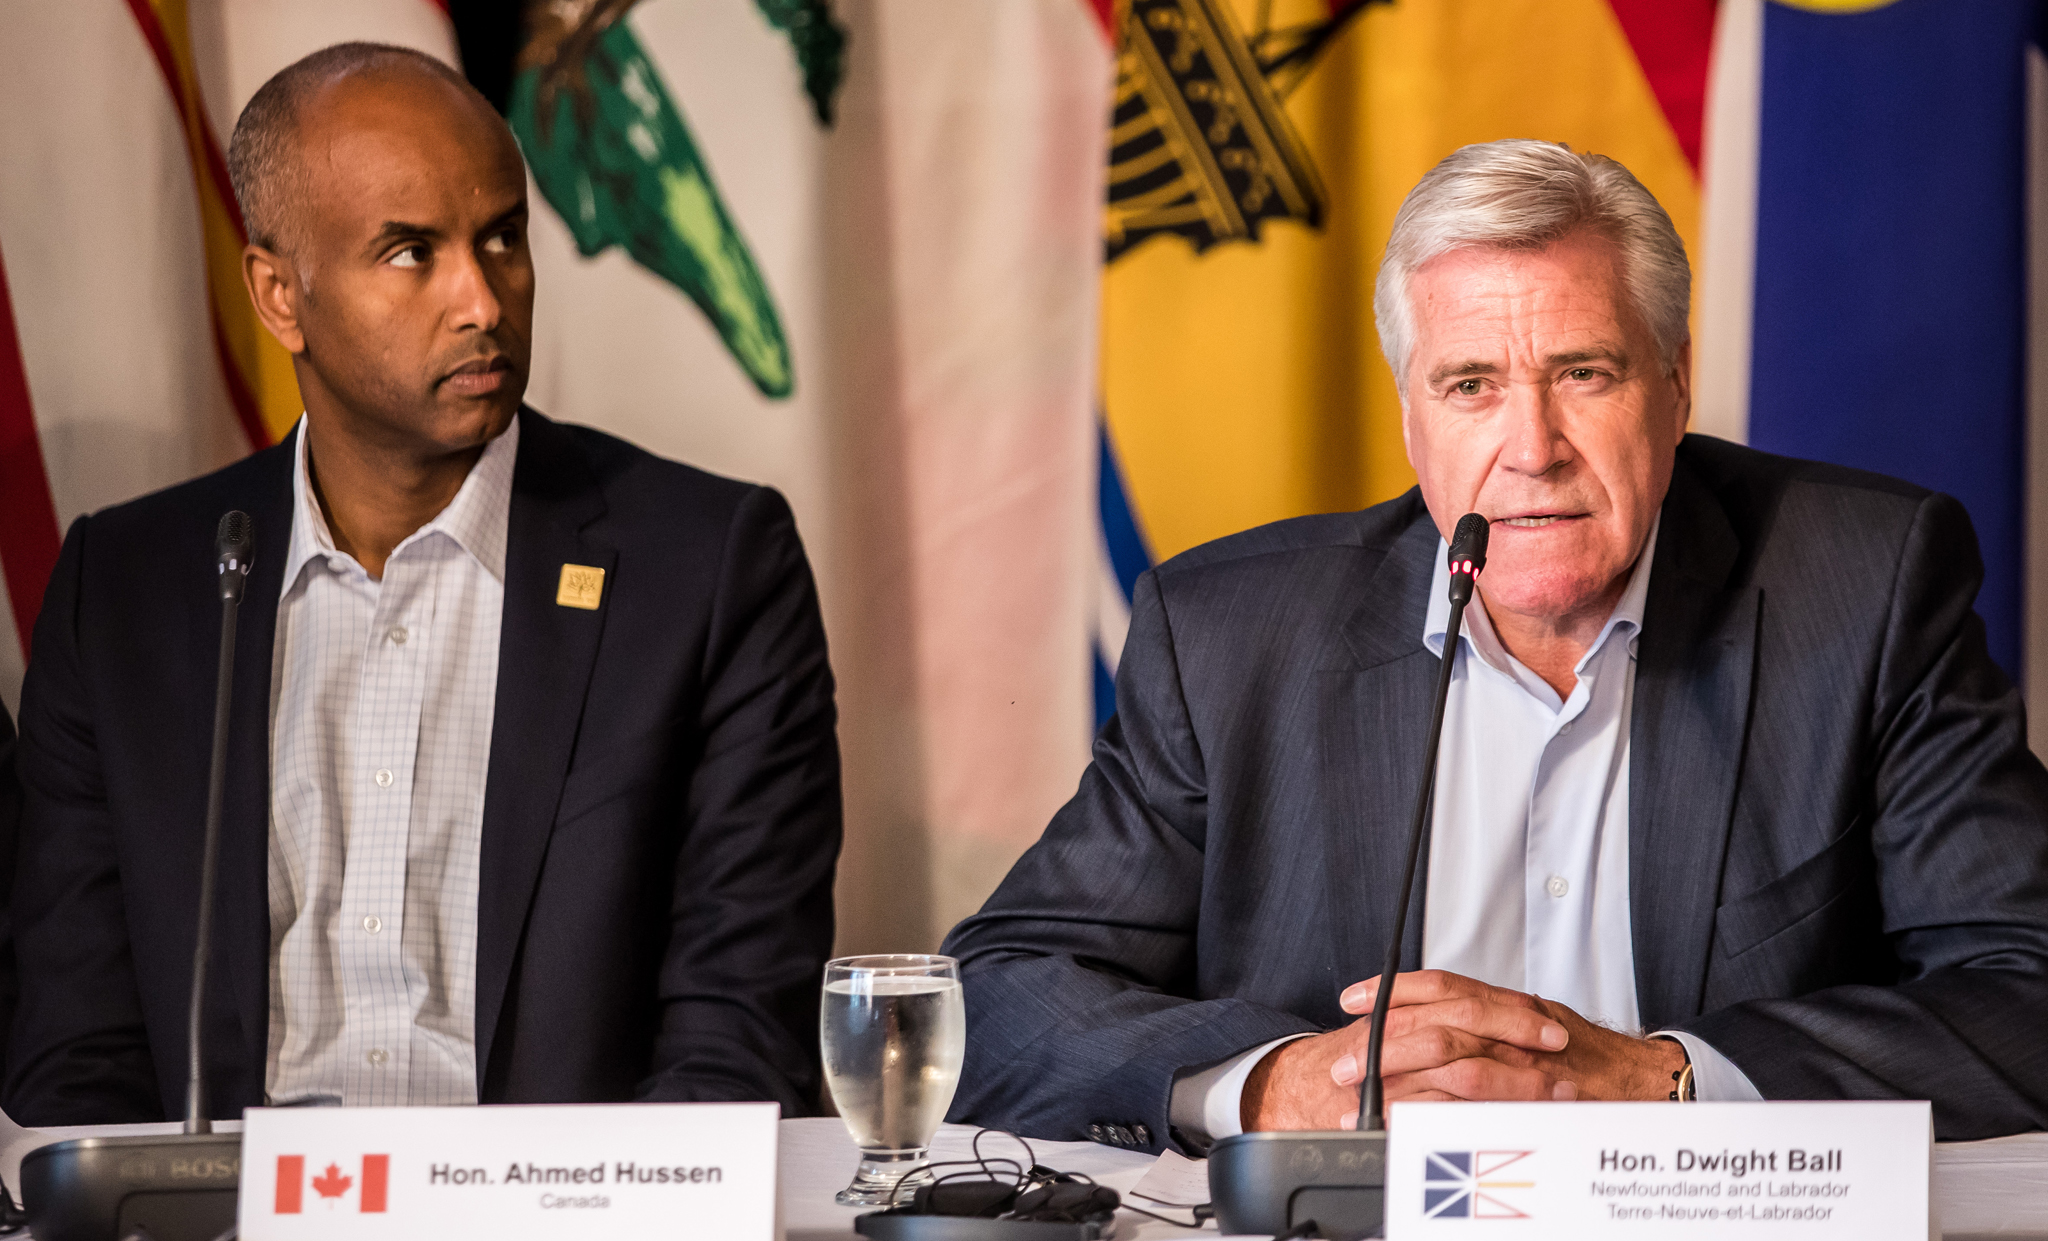 Le 11 juillet 2017 - Le ministre de l'Immigration, des Réfugiés et de la Citoyenneté Ahmed Hussen et le premier ministre de Terre-Neuve-et-Labrador Dwight Ball rencontrent les médias à la fin de la réunion du 11 juillet 2017 sur la Stratégie de croissance pour l'Atlantique qui a eu lieu à Humber Valley (T.-N.-L.).